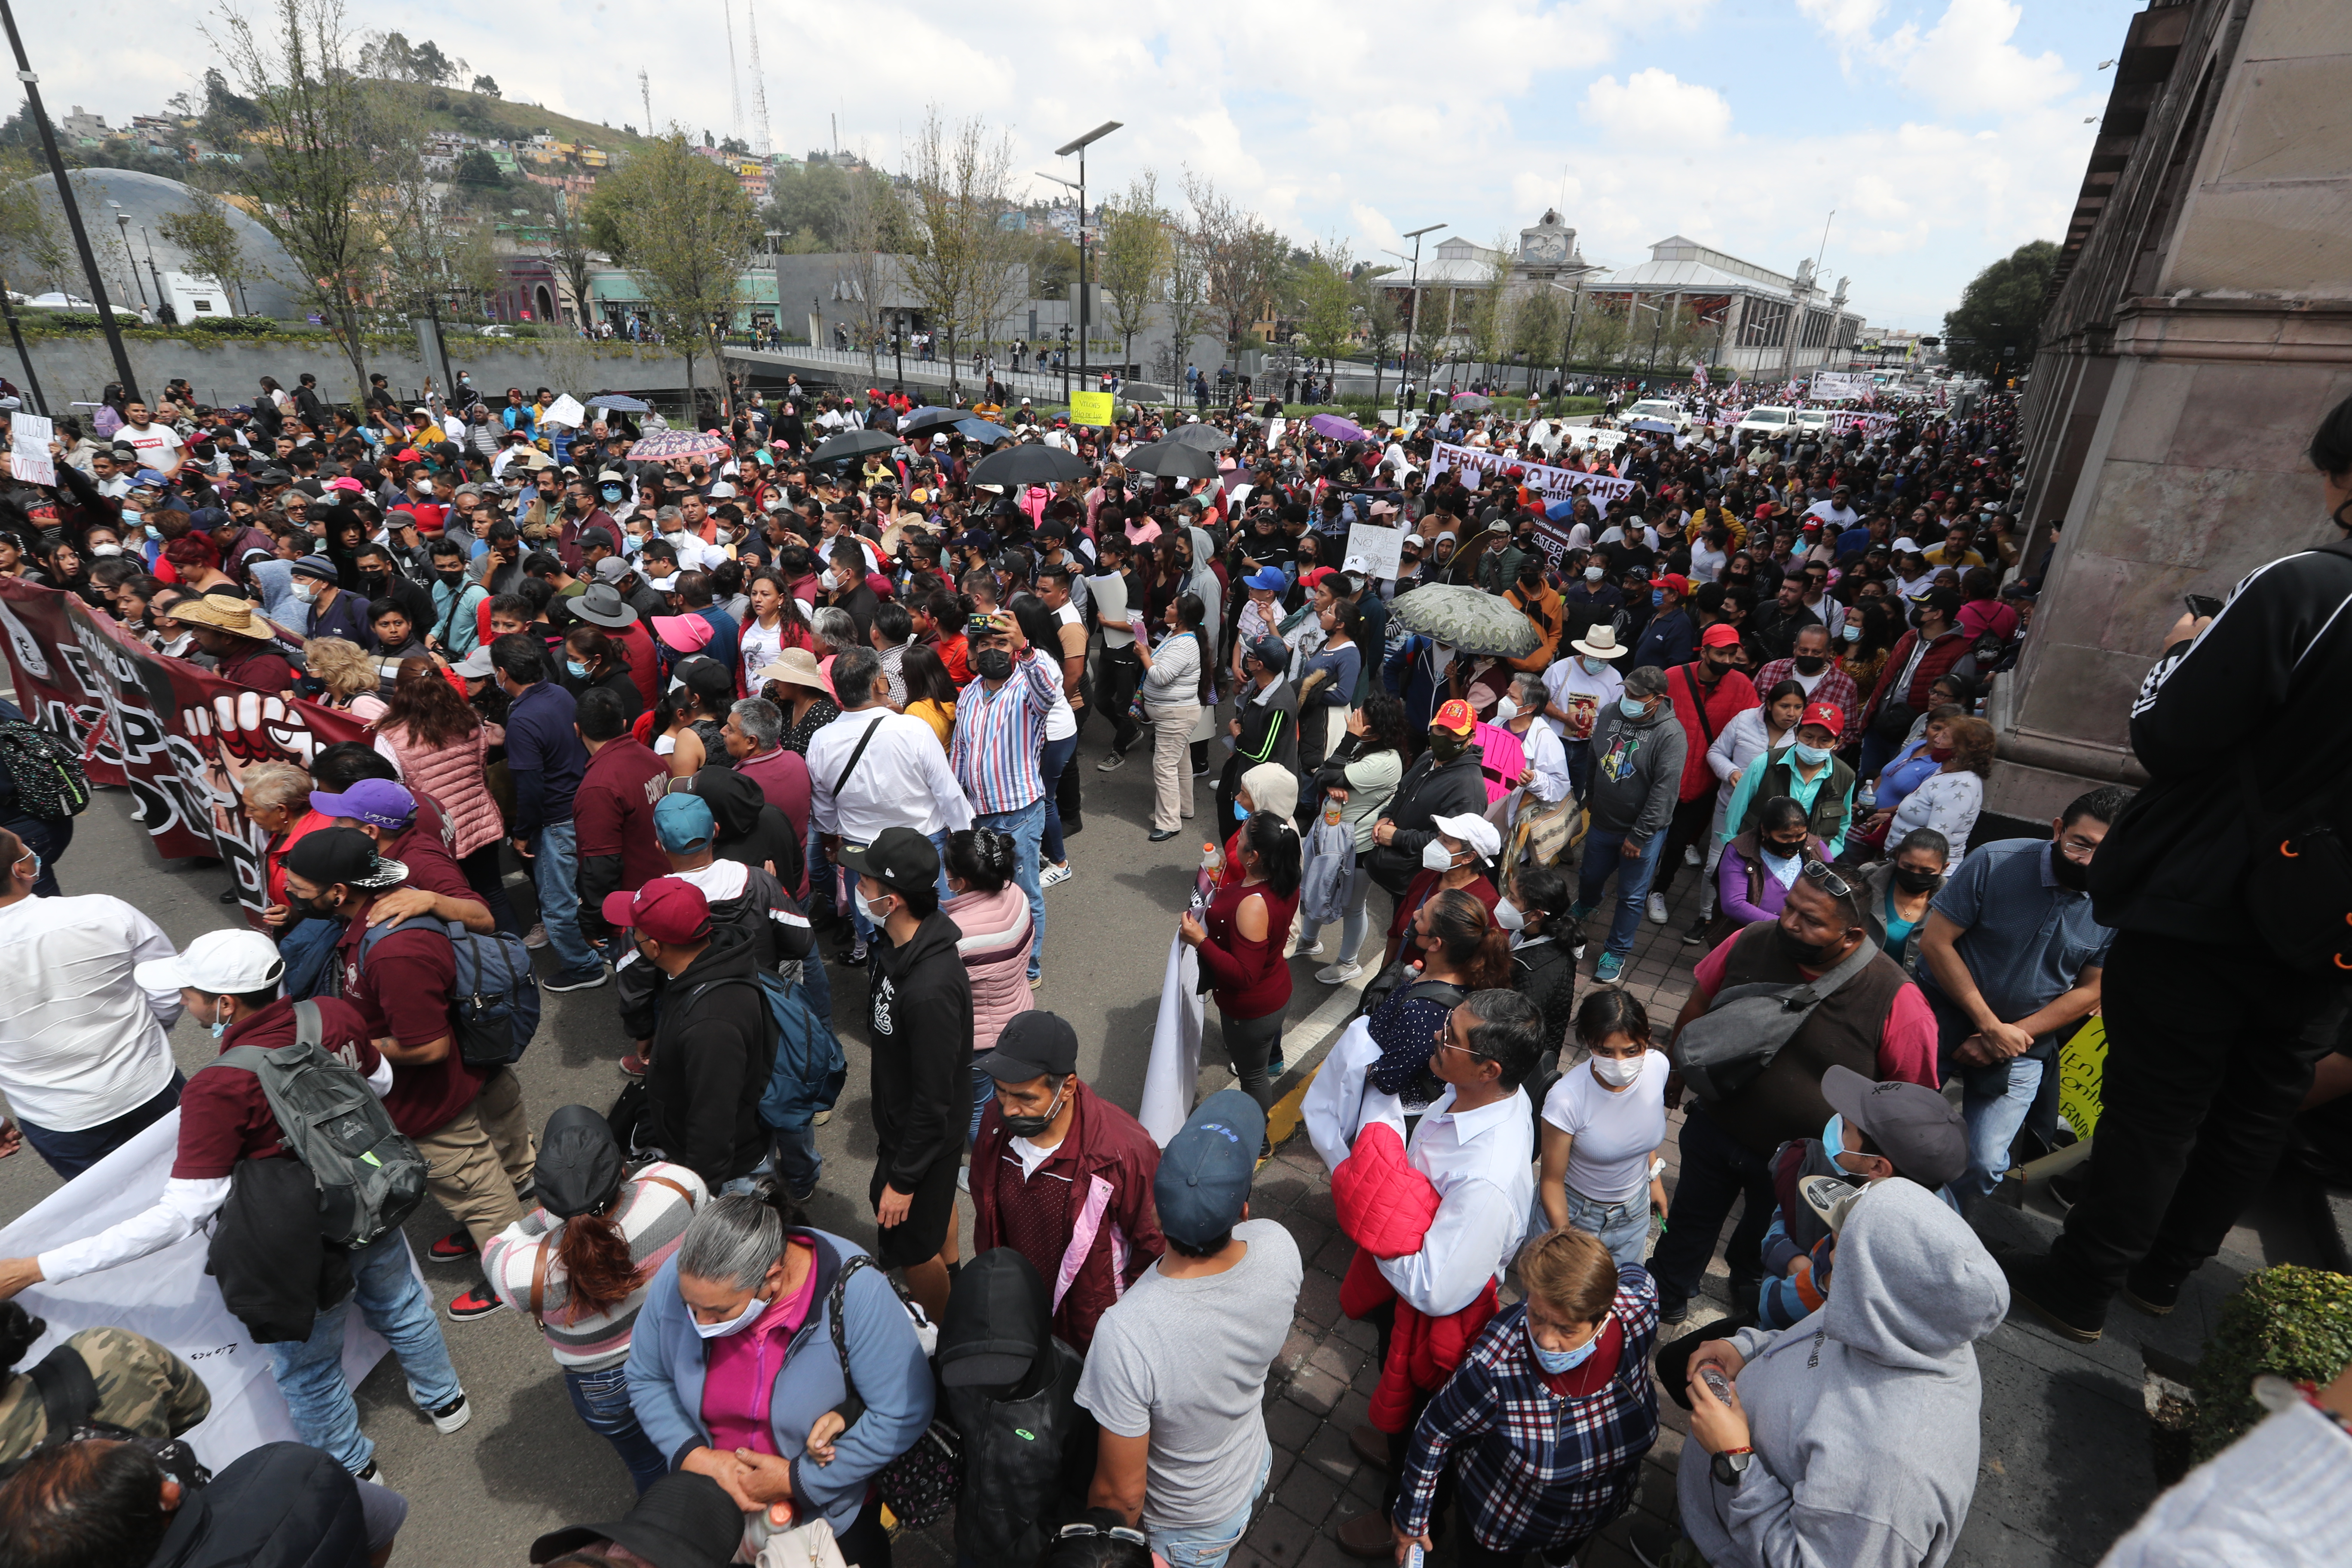 Alcaldes arman caos en Toluca por 469 hectáreas en disputa entre Acolman y Ecatepec